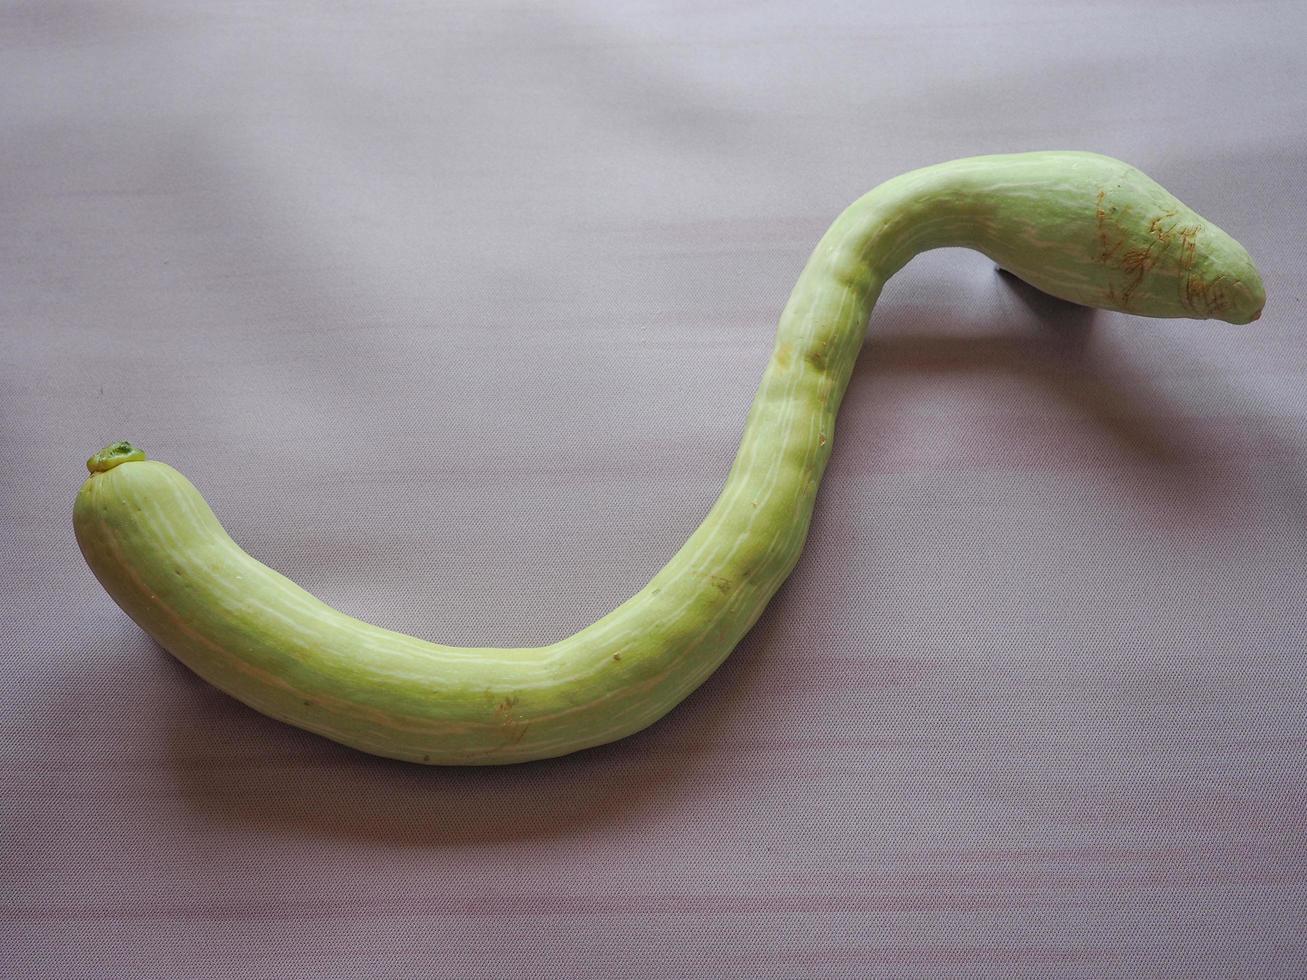 Schlangenförmiger Kürbis foto